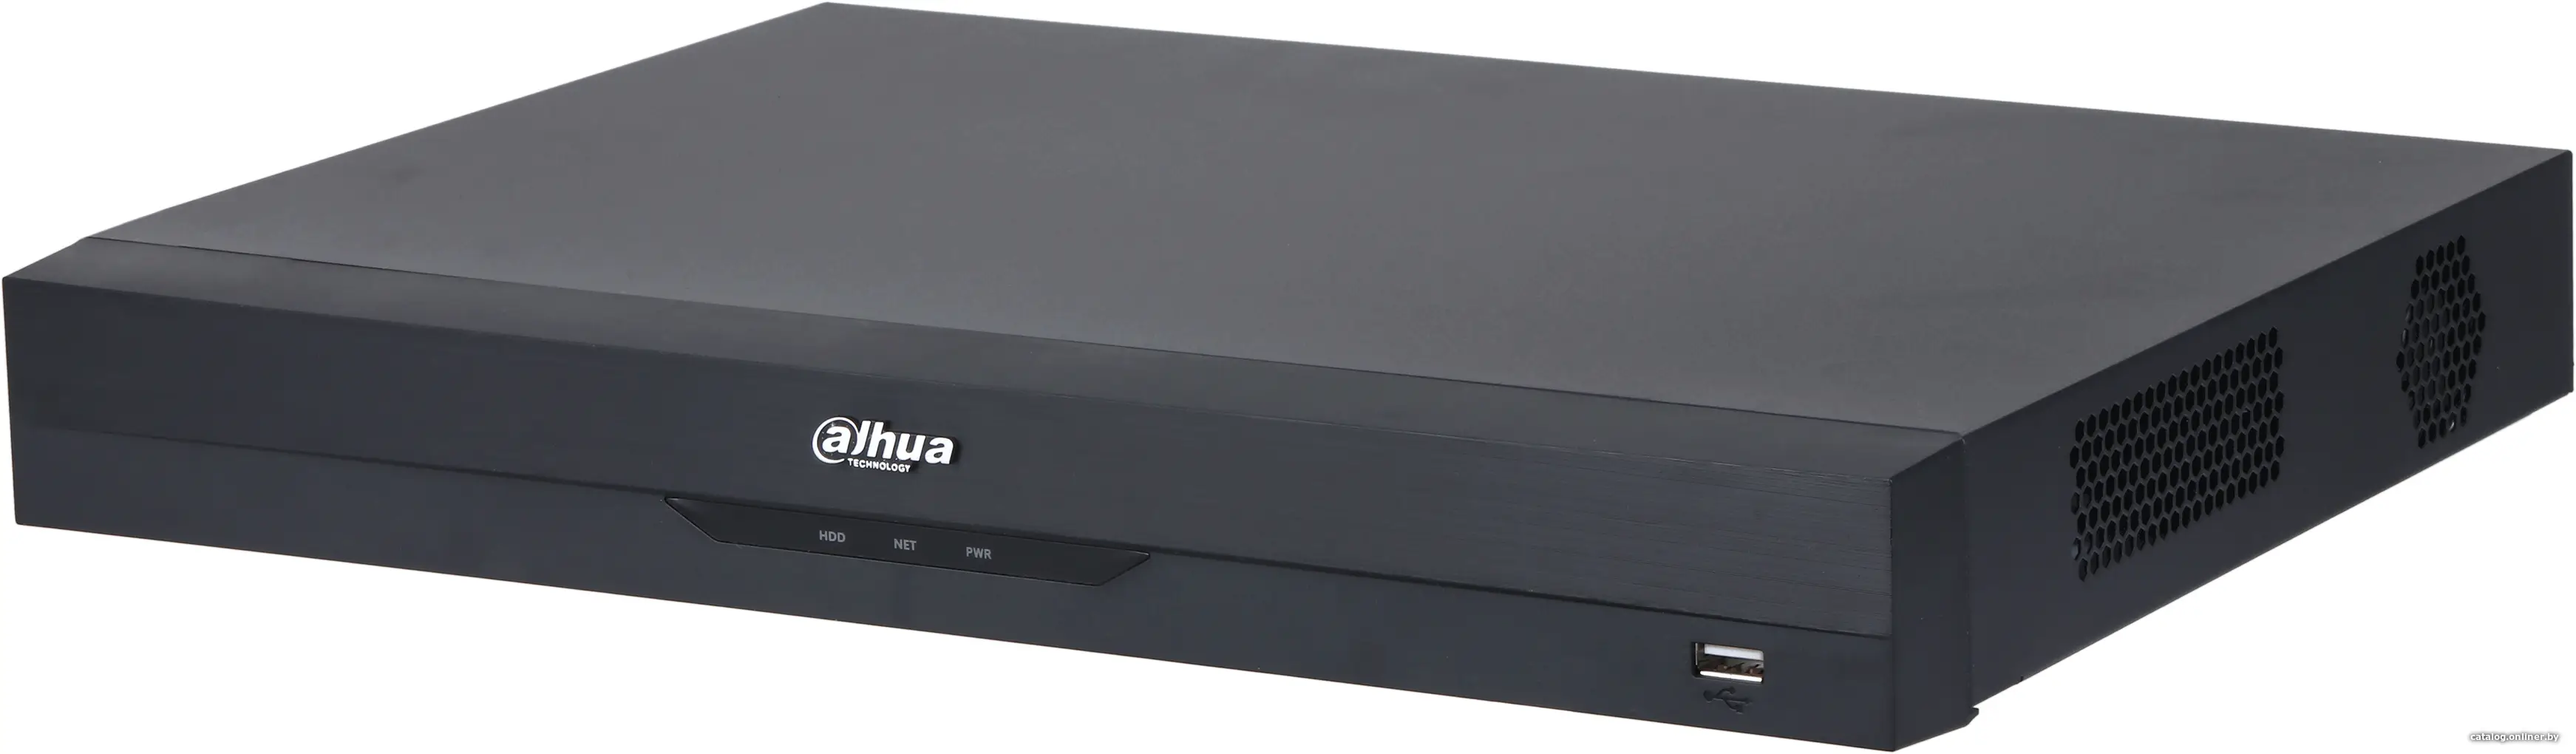 Купить Гибридный видеорегистратор Dahua DH-XVR5232AN-I3, цена, опт и розница